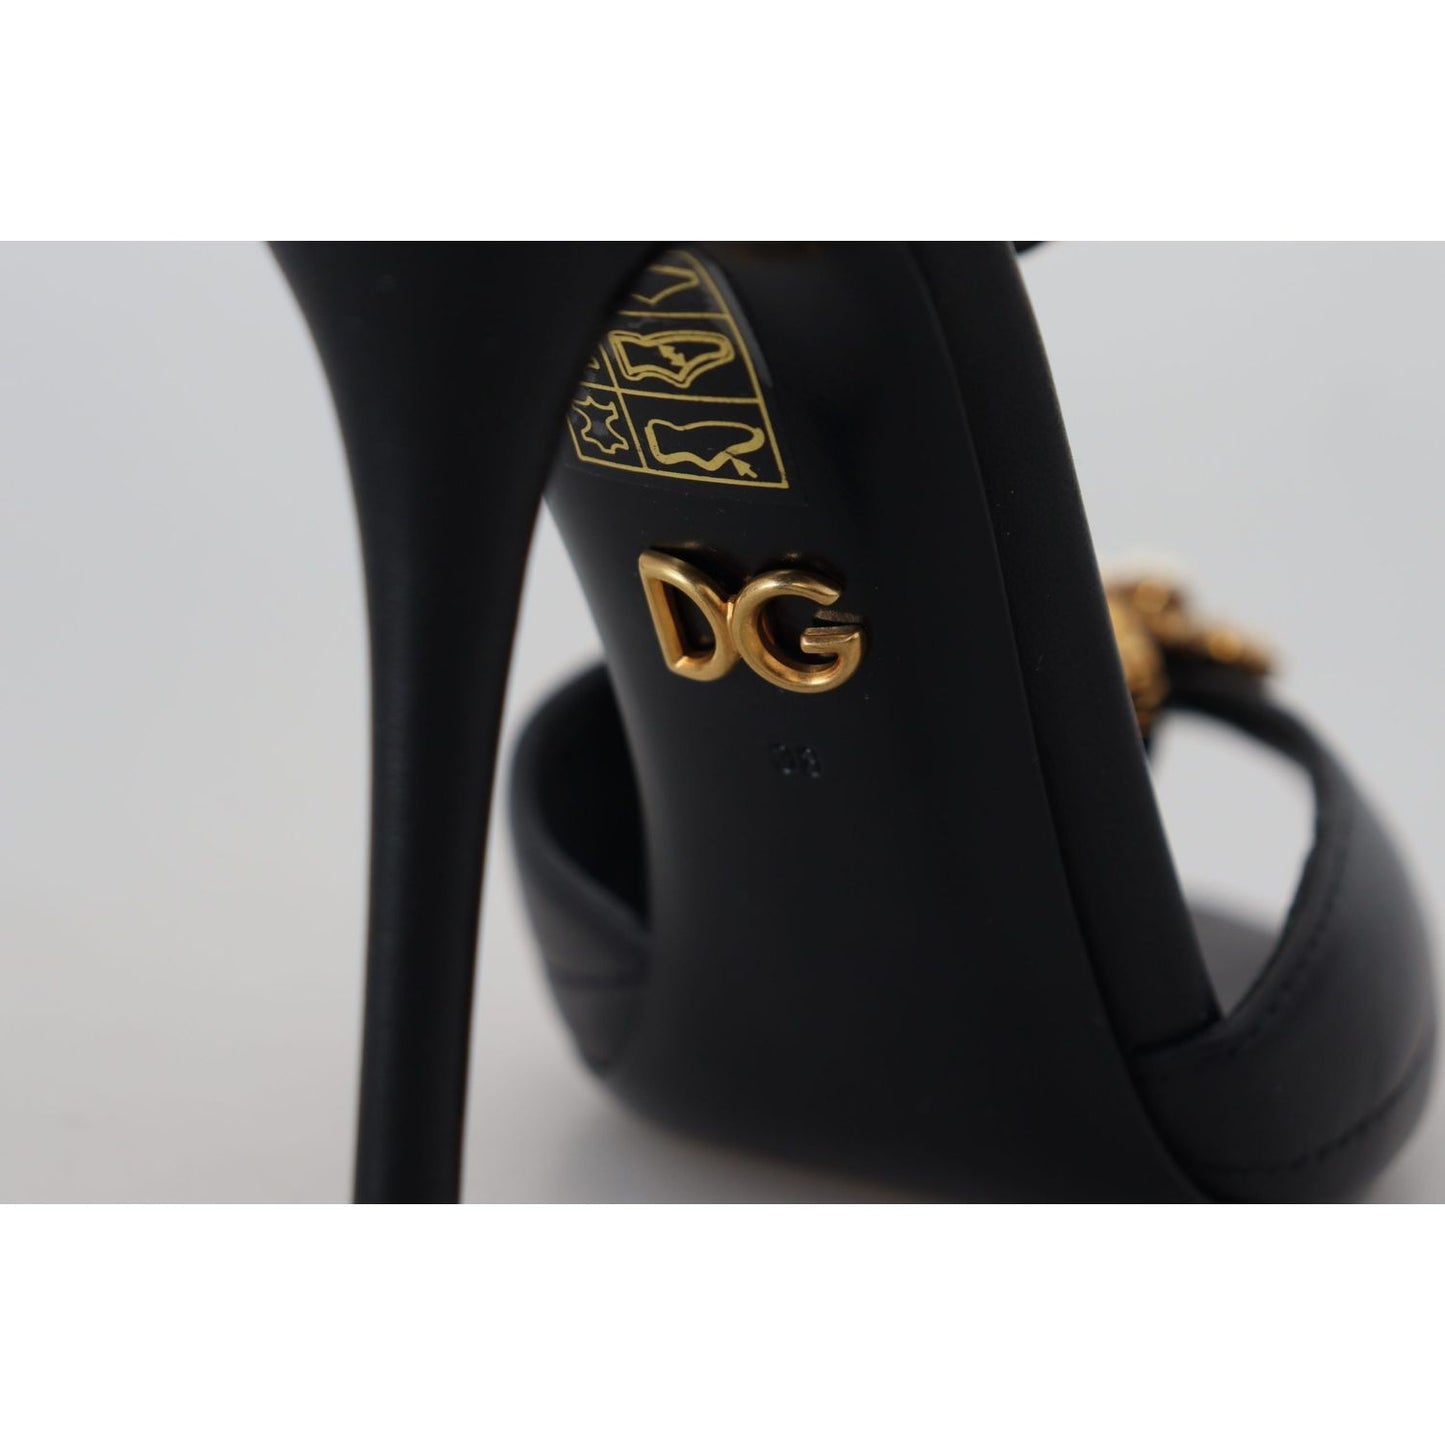 Dolce & Gabbana Elegant Gold-Embellished Leather Sandals black-leather-gold-devotion-heart-sandals-shoes